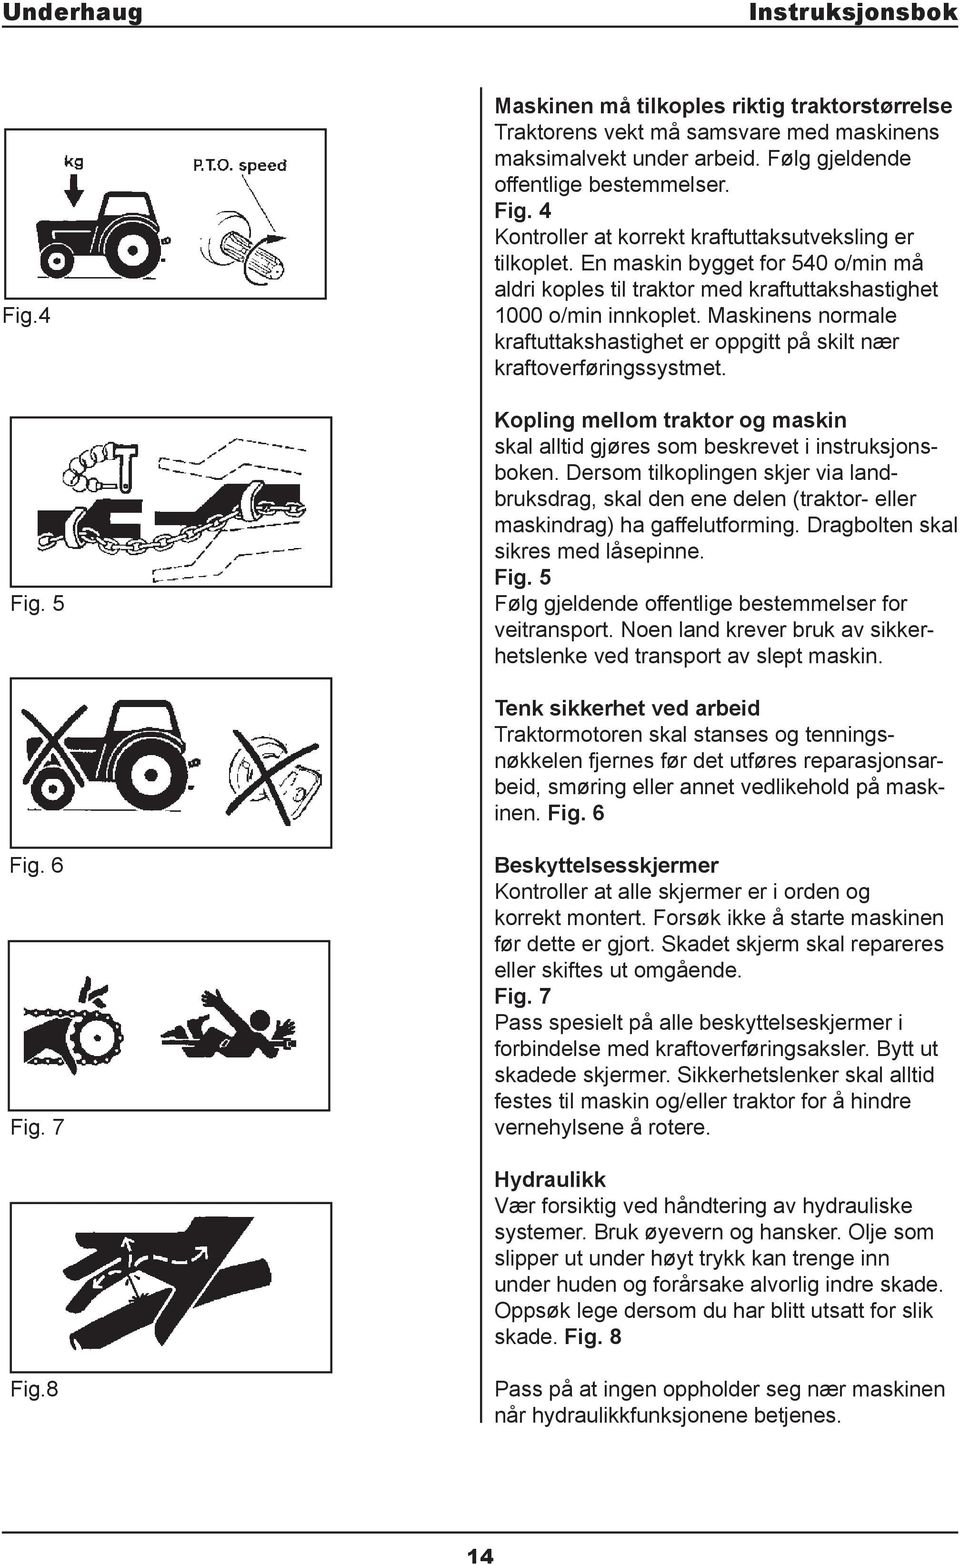 Kopling mellom traktor og maskin skal alltid gjøres som beskrevet i instruksjonsboken. Dersom tilkoplingen skjer via landbruksdrag, skal den ene delen (traktor- eller maskindrag) ha gaffelutforming.